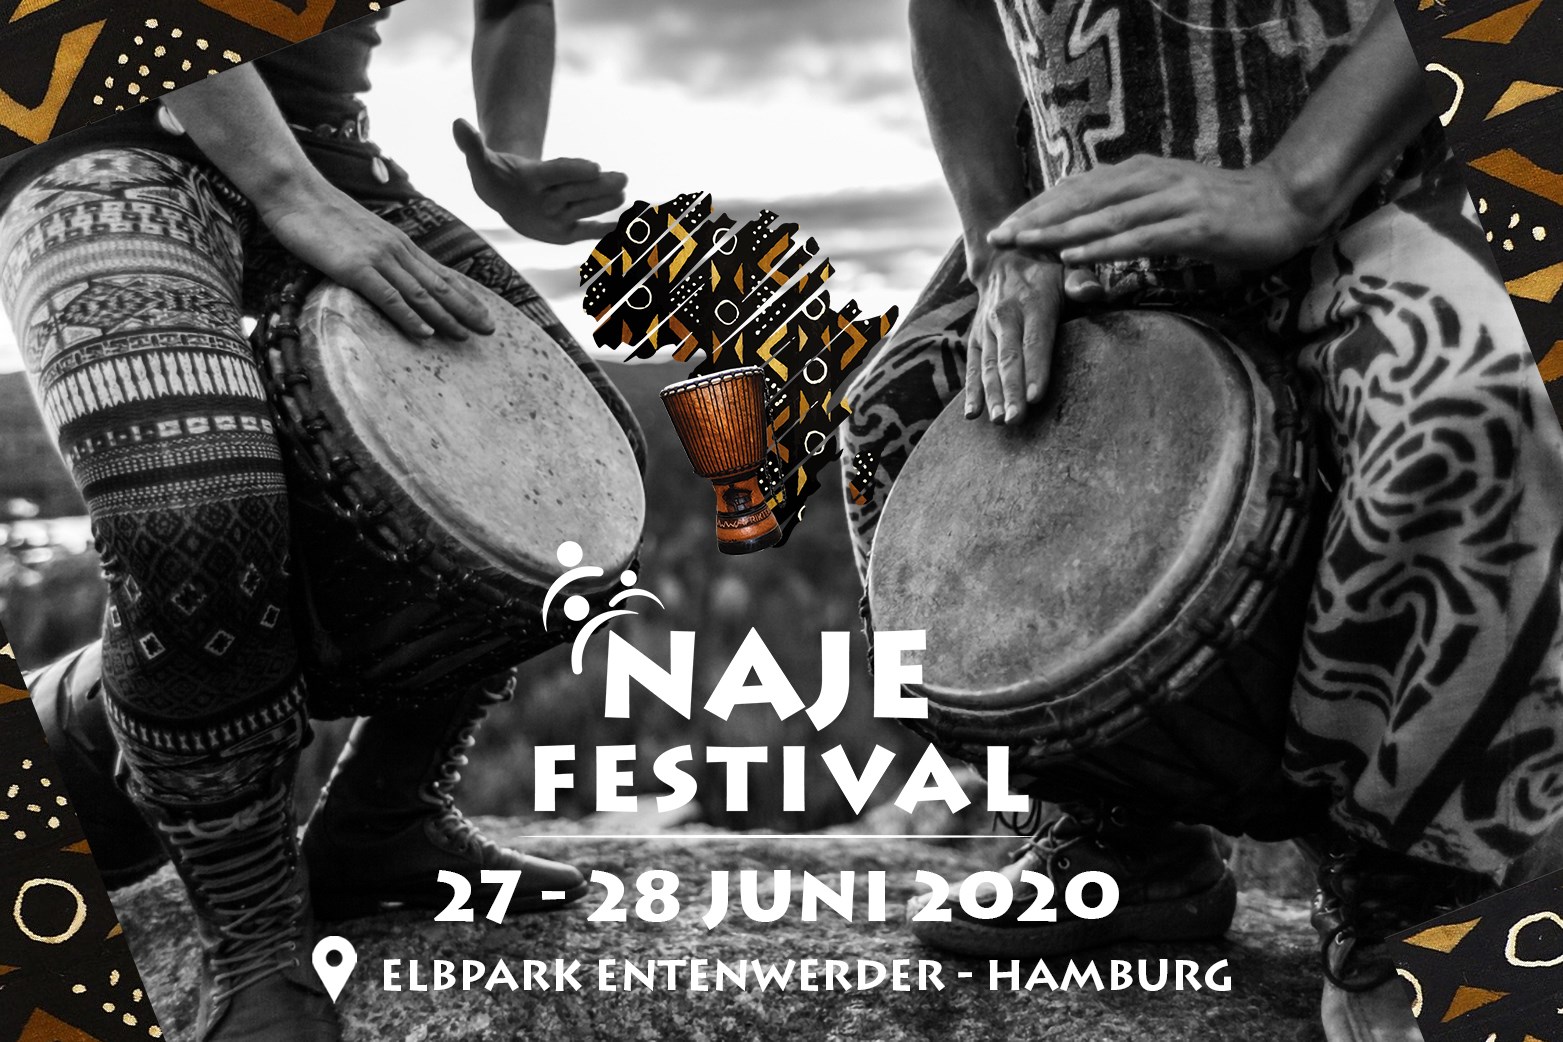 Naje-Festival